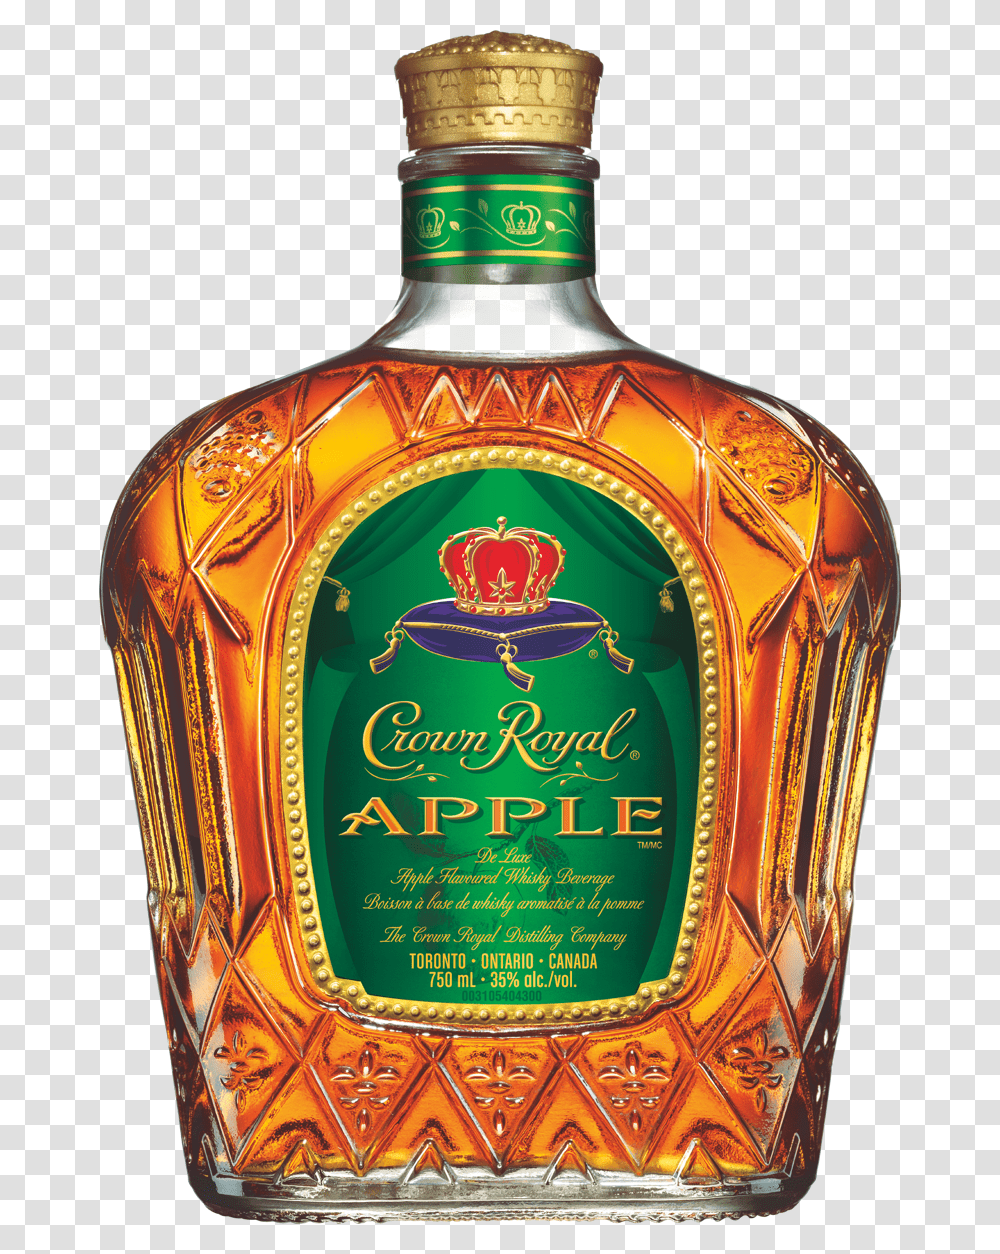 Crown Royal Apple Crown Royal Apple Whisky Liquor Alcohol Beverage Drink Transparent Png Pngset Com